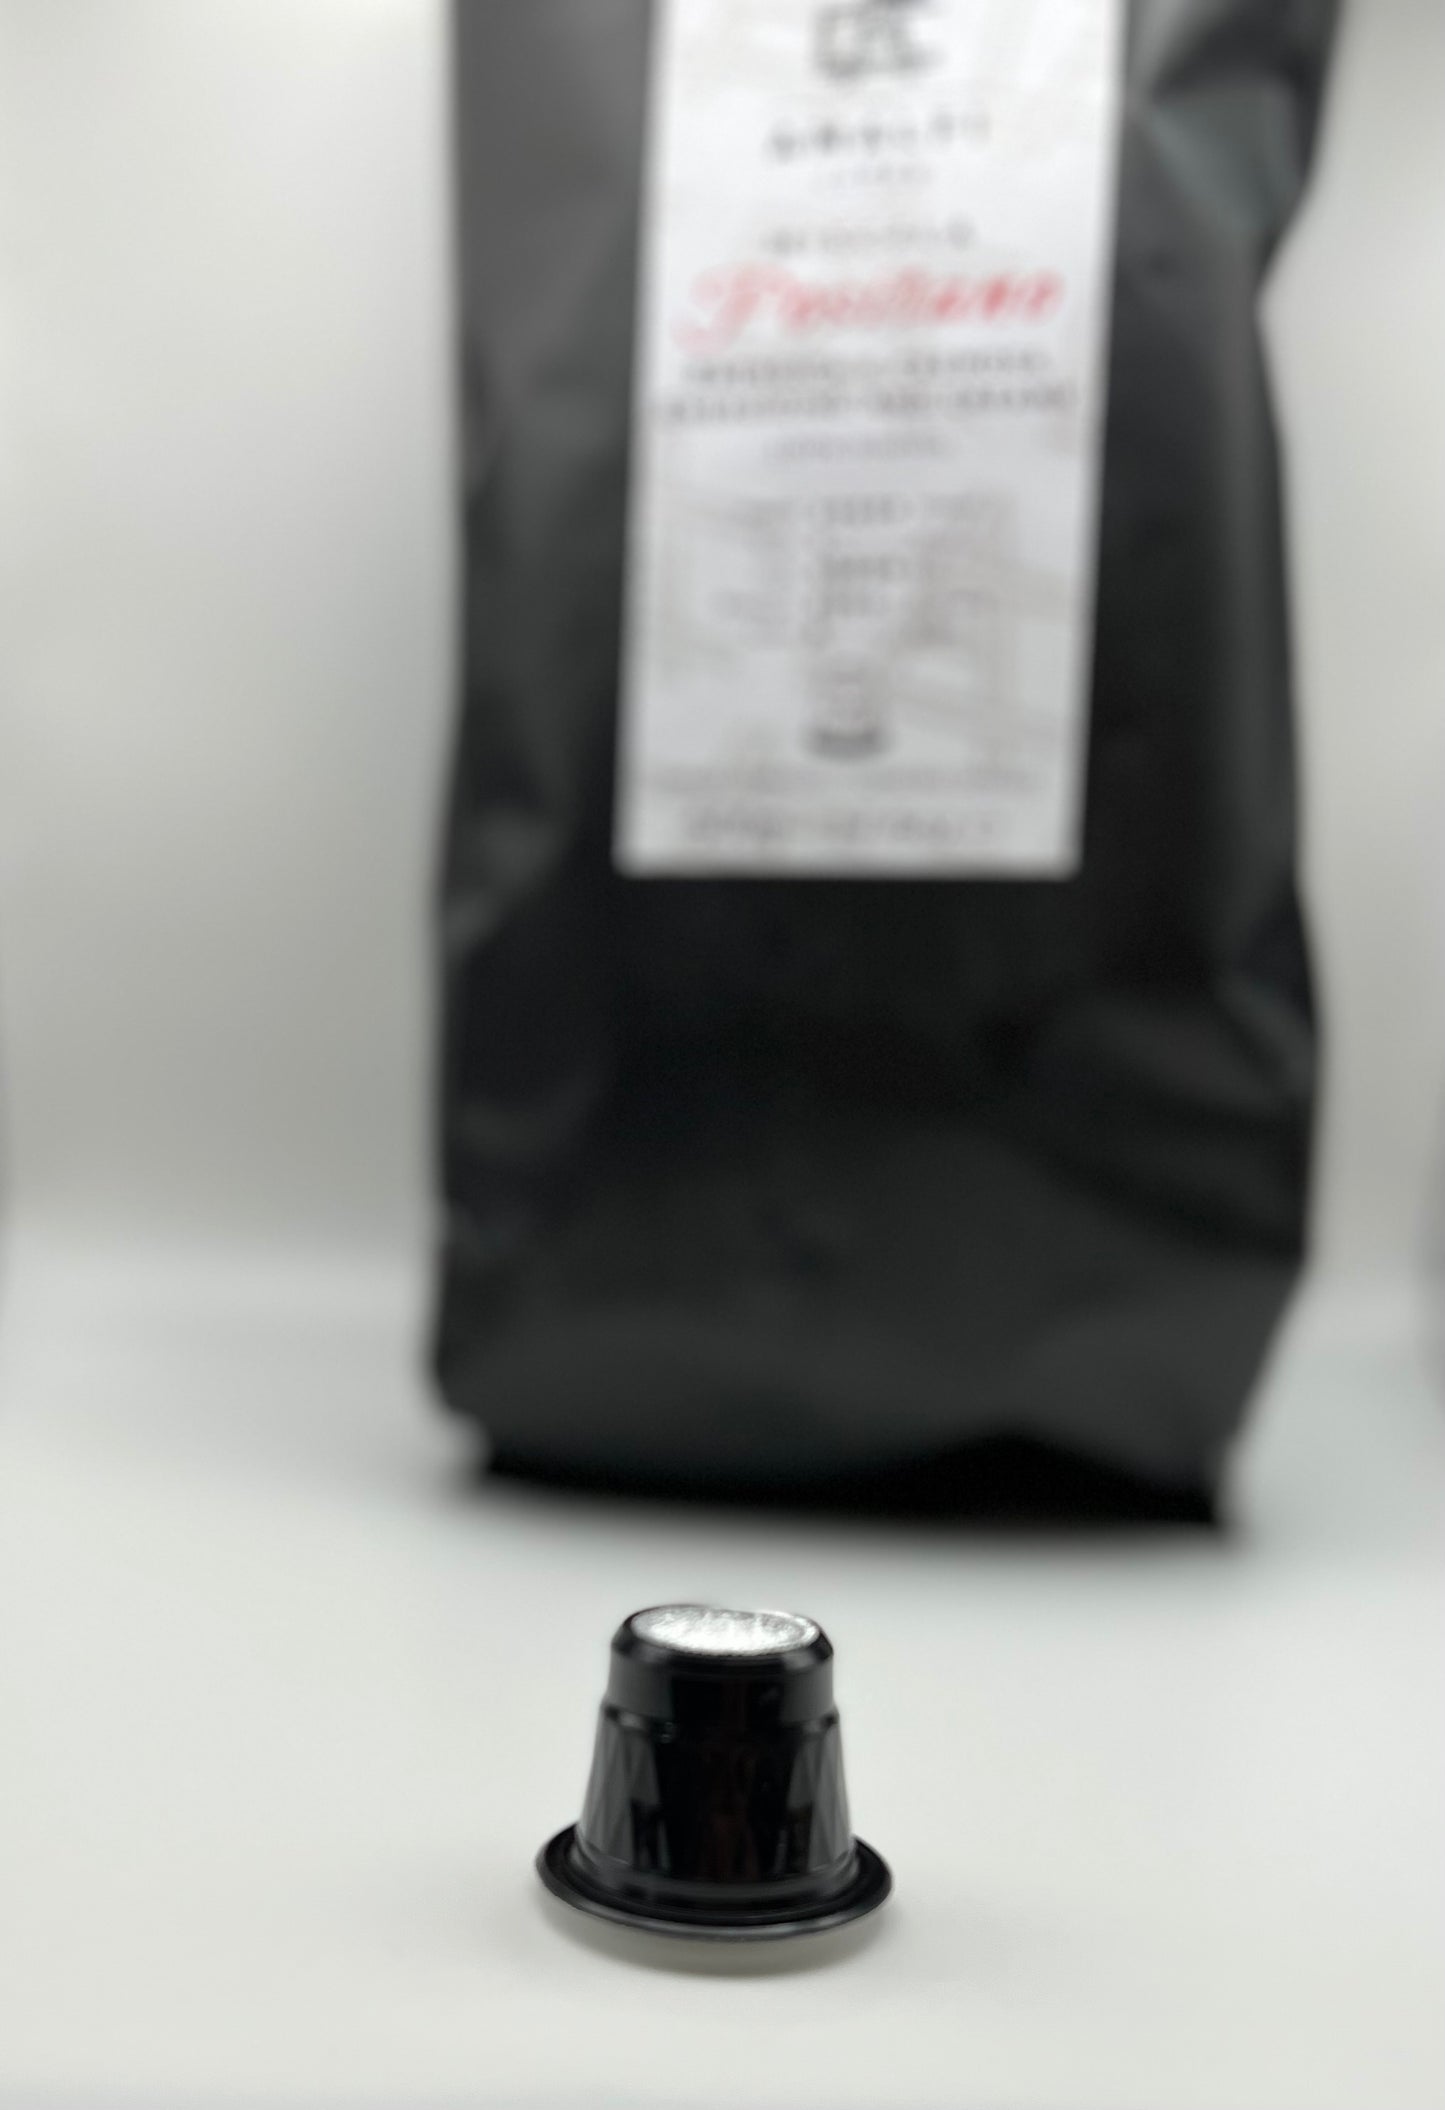 Amalfi Coffee Fine Italian Espresso Capsules, 100 Coffee Pods Pack, Single Cup Coffee Capsule, Nespresso Original Compatible Capsules (Ravello Coffee Capsules)